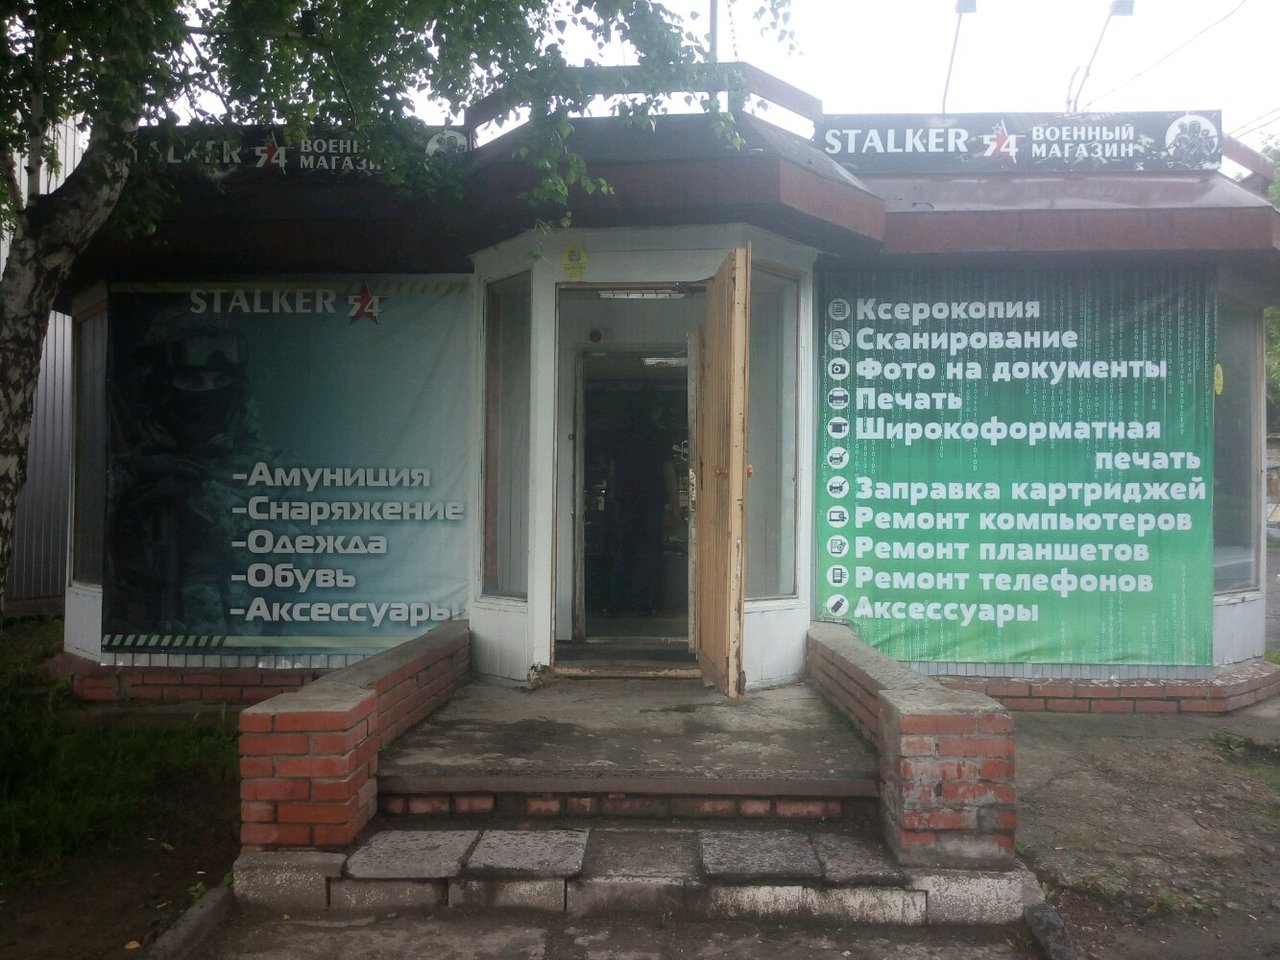 Вход в военторг Stalker-54 в Новосибирске